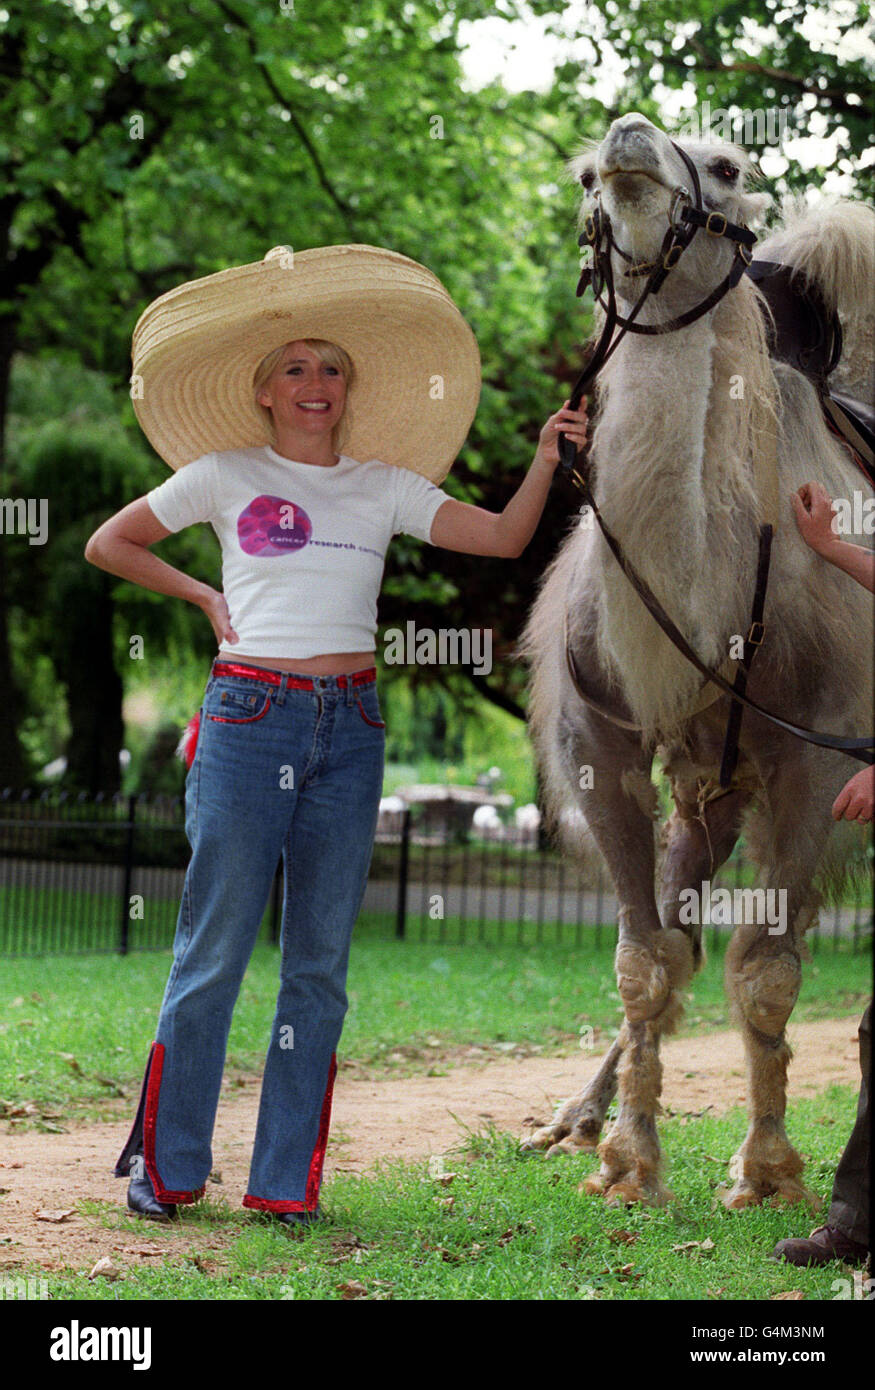 L'attrice Michelle Collins si pone con un cammello Bactrio allo Zoo di Londra, per lanciare l'appello straniero della Campagna di Ricerca sul cancro. La campagna sta esortando il pubblico a sostenere l'appello che trasforma le monete rimanenti in sterline per trovare cure contro il cancro. Foto Stock